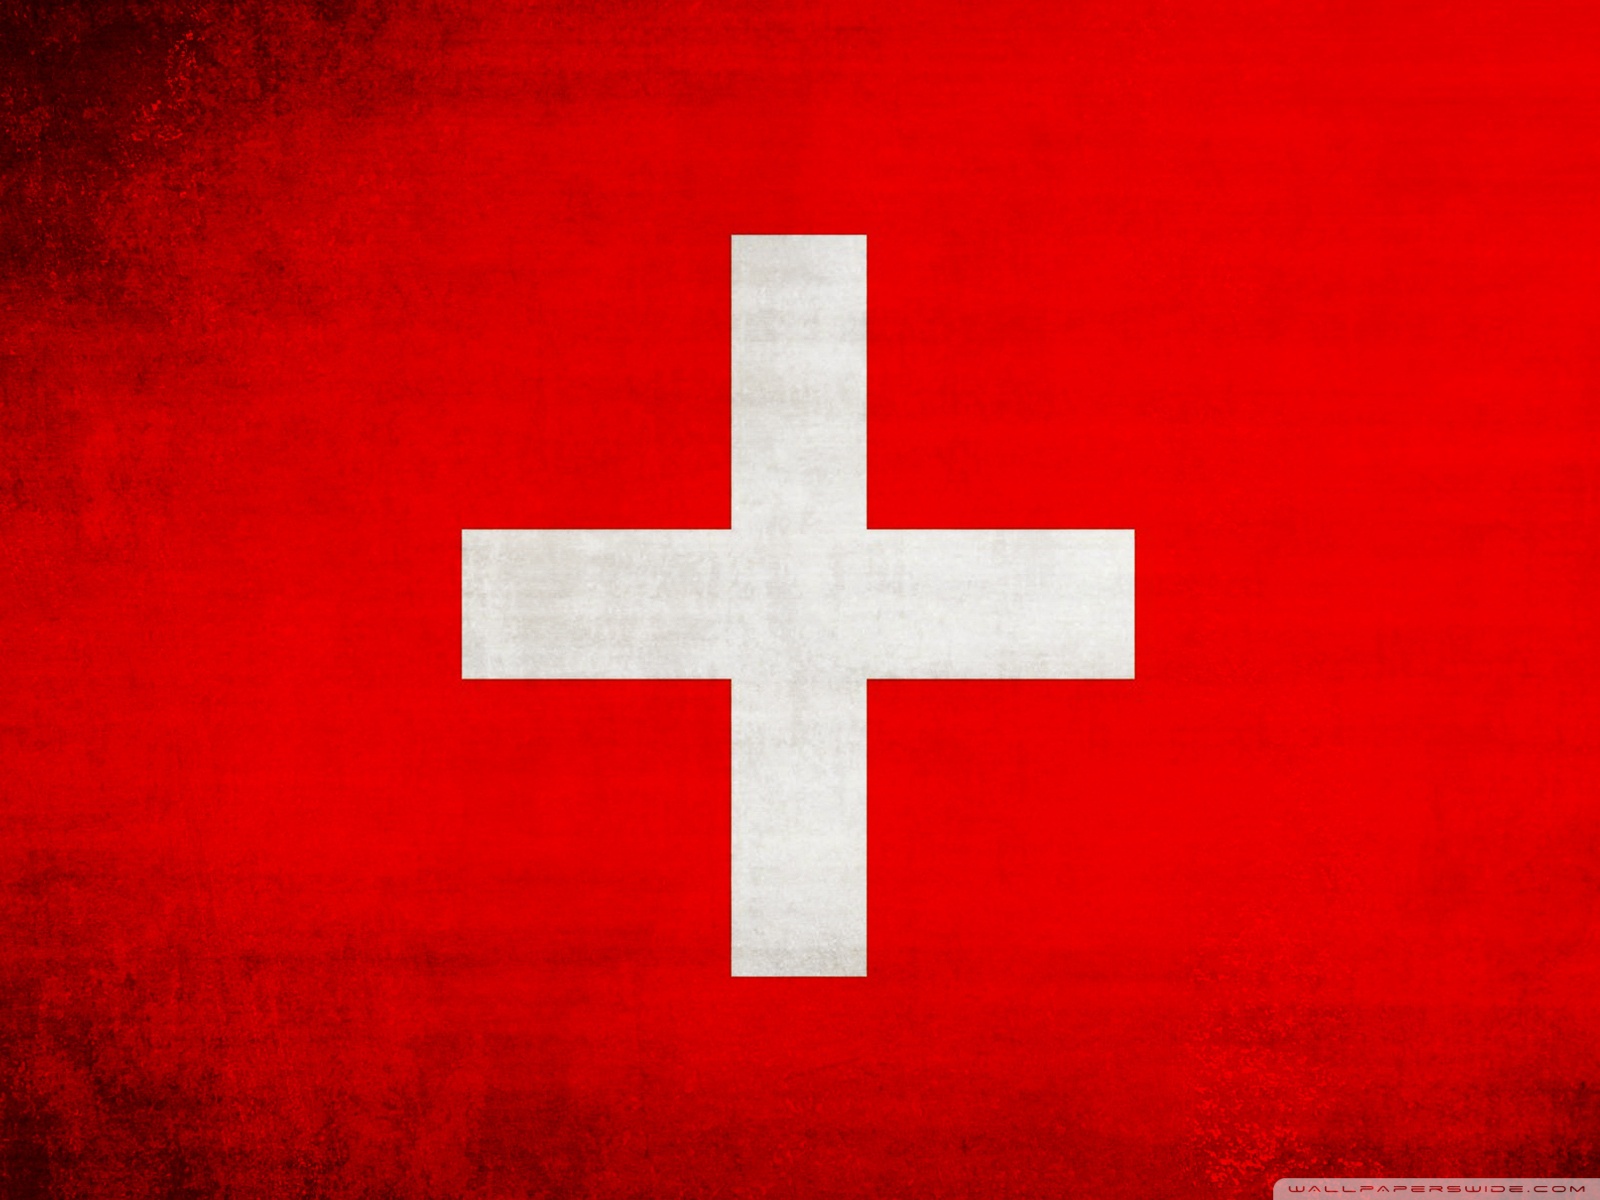 Switzerland Flag 4k HD Desktop Wallpaper For Ultra Tv